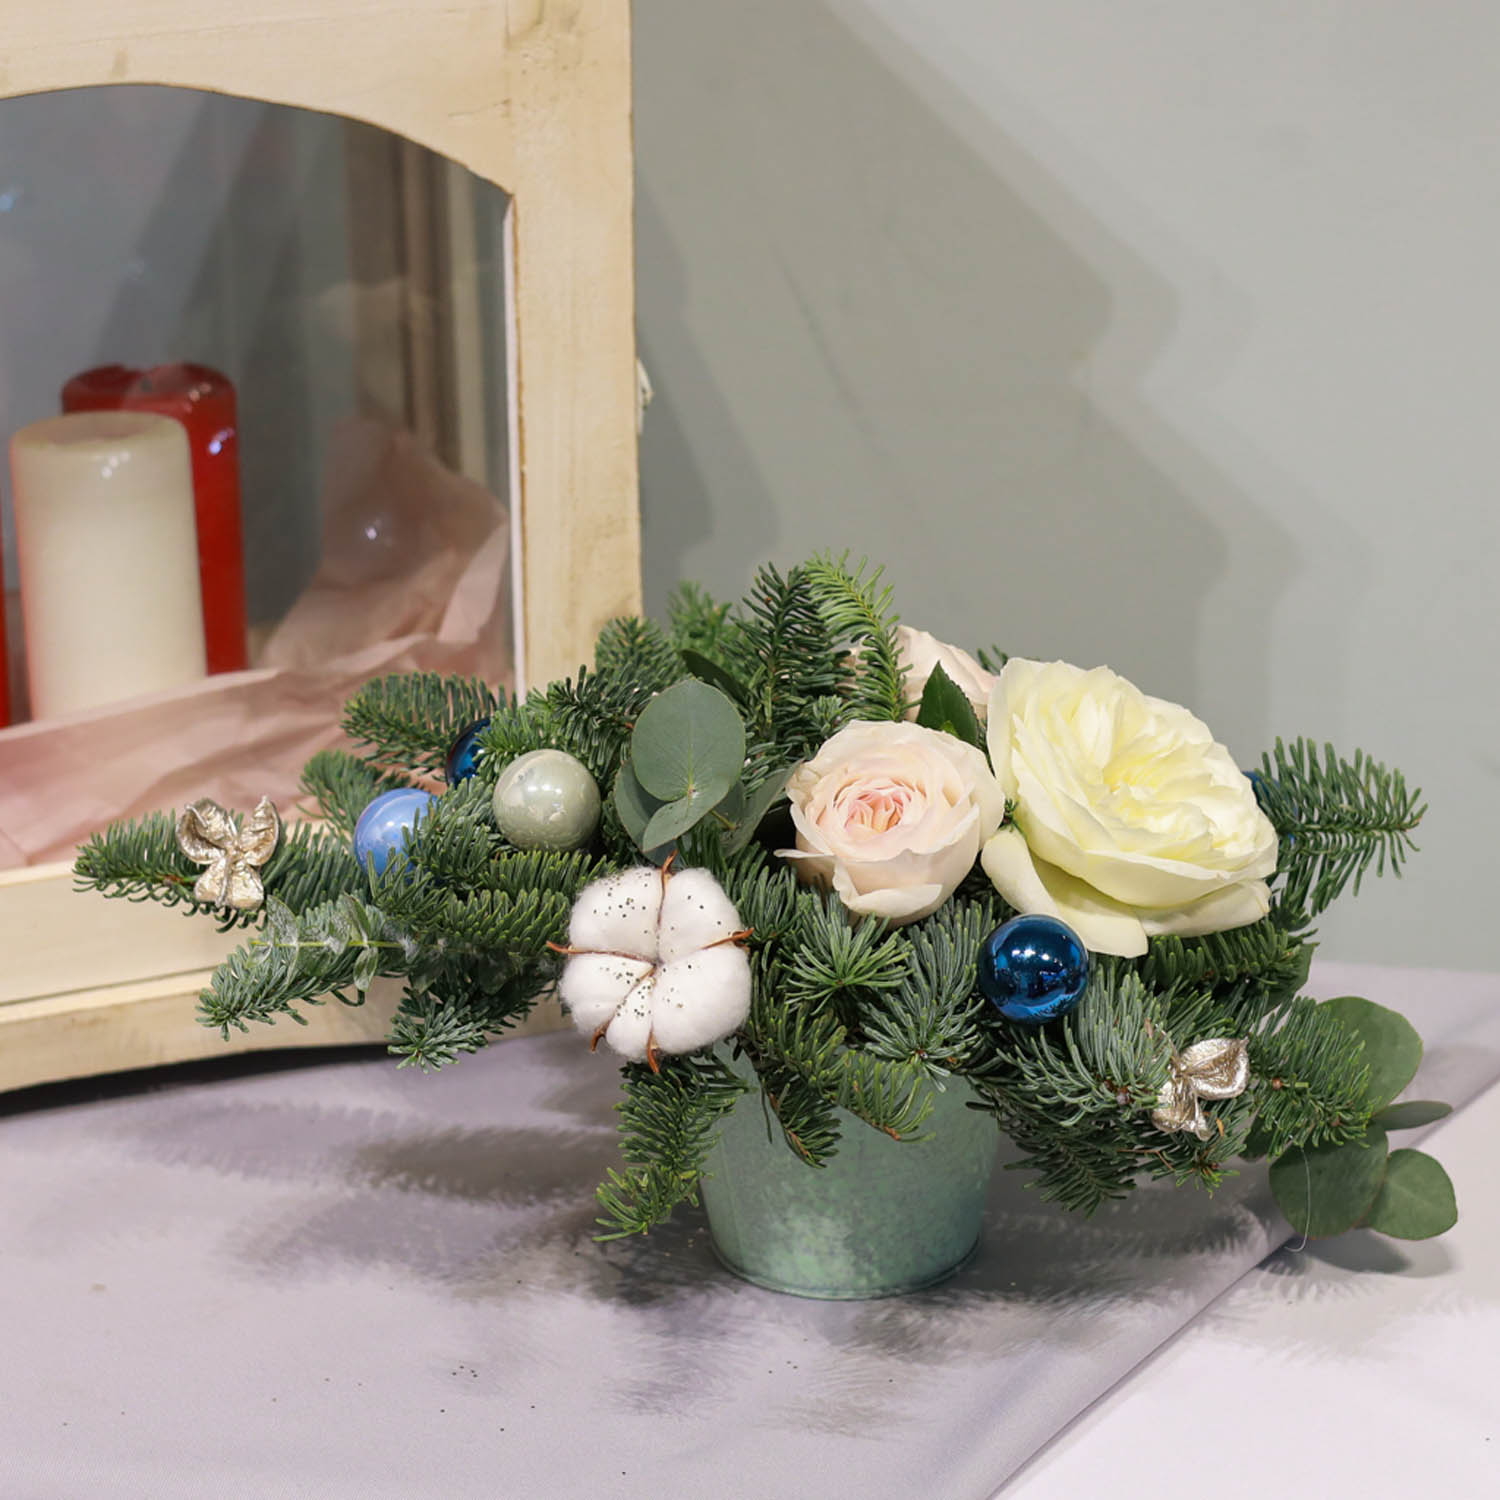 новогодняя композиция с нобилисом, светлыми розами и хломком и декором